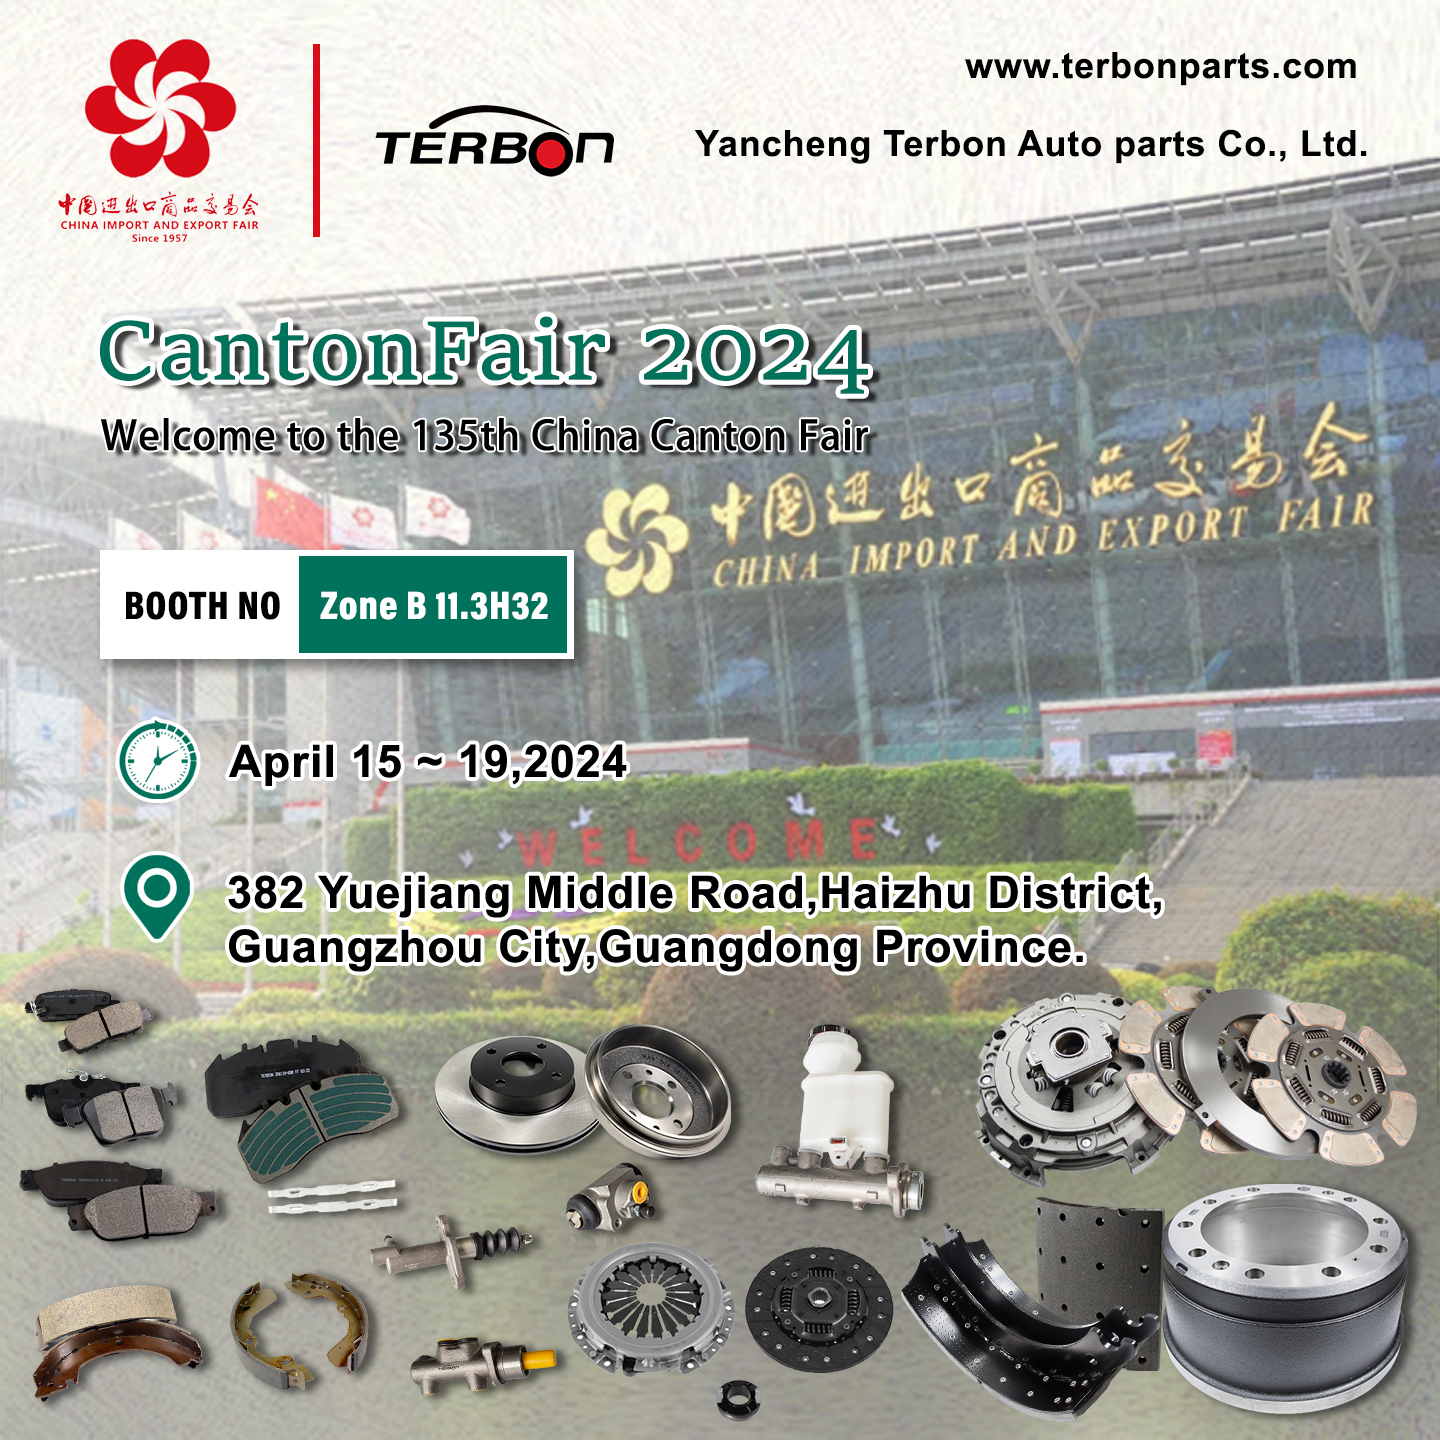 YanCheng Terbon Auto Parts ကုမ္ပဏီသည် ကမ္ဘာလုံးဆိုင်ရာ ပါတနာများသို့ ရင်းရင်းနှီးနှီး ဖိတ်ခေါ်မှုကို သက်တမ်းတိုးသည်။